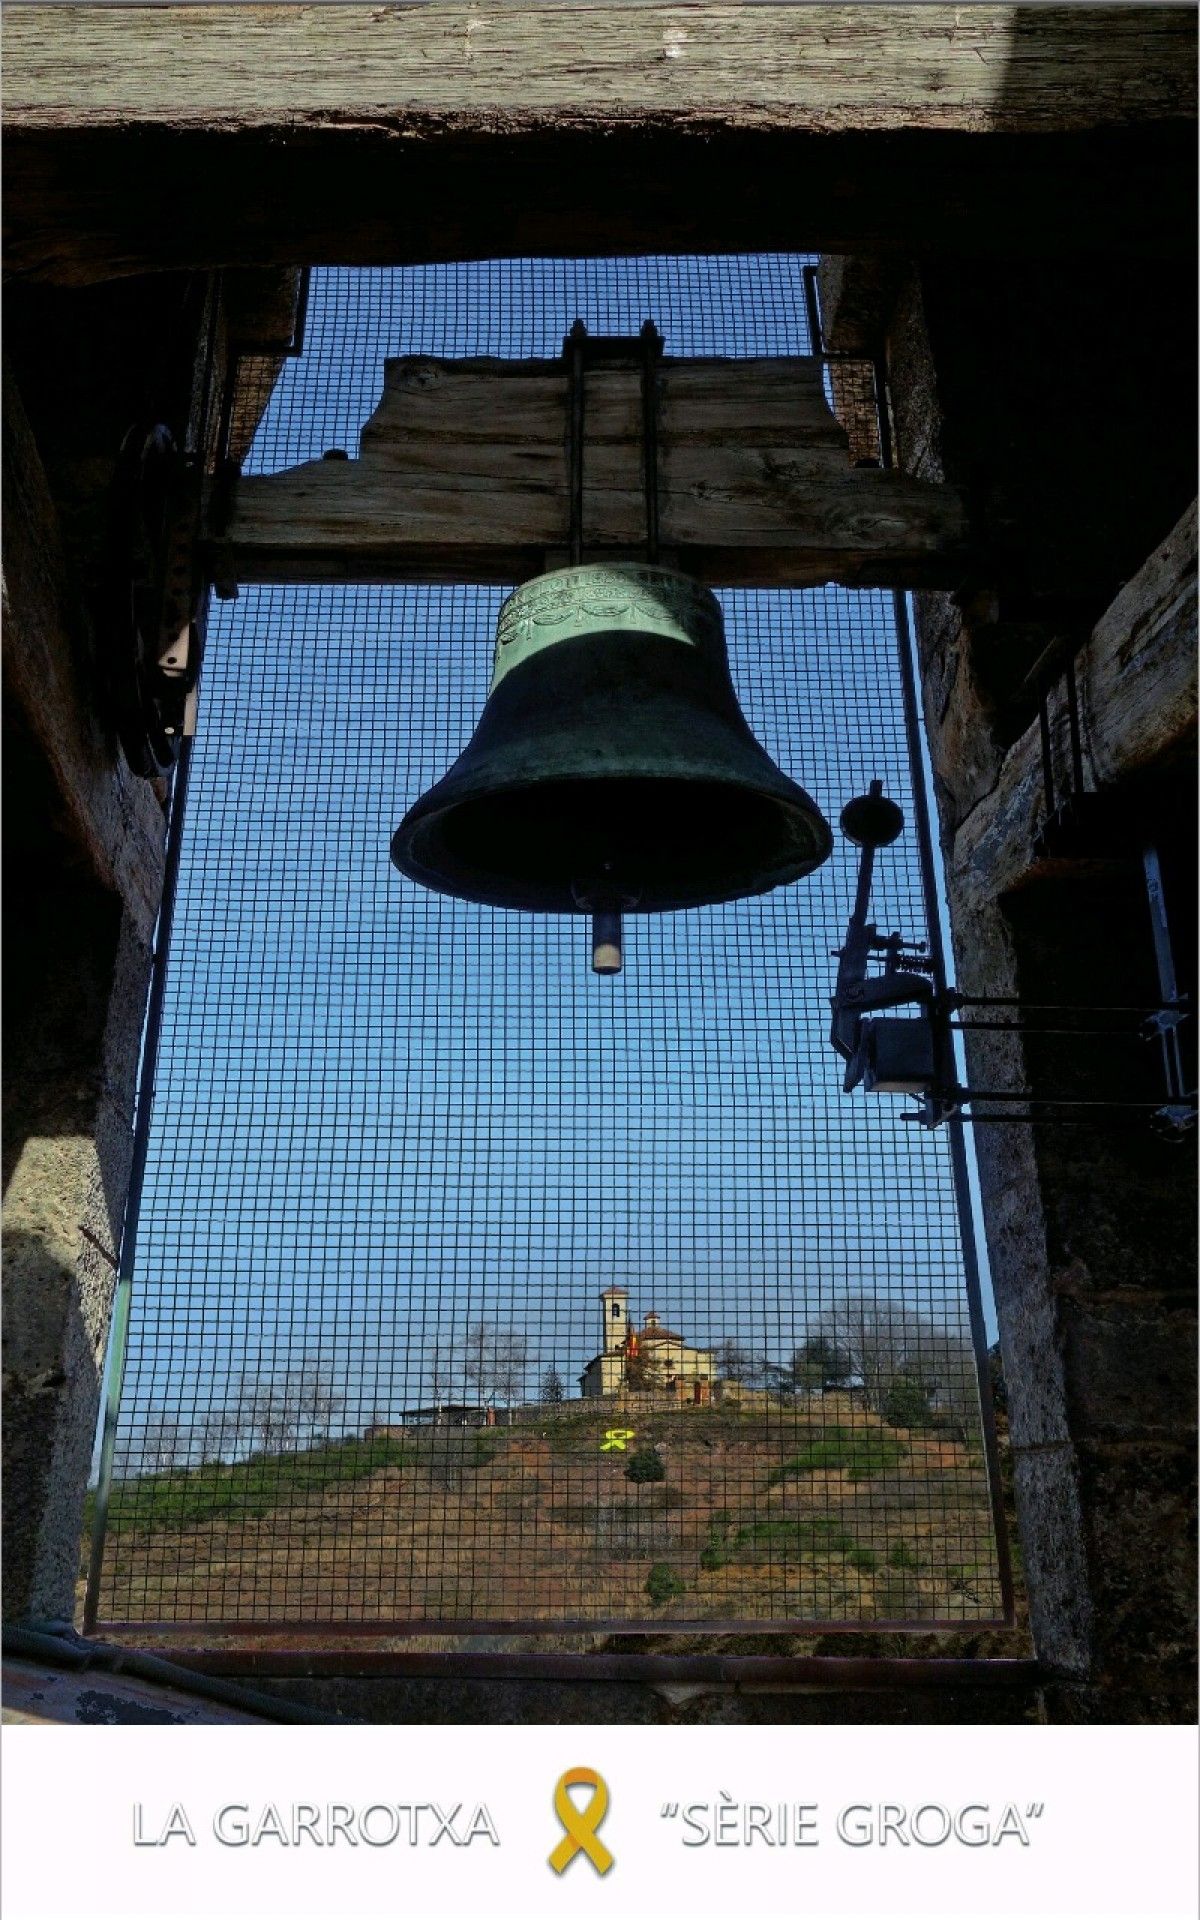 Una de les postals grogues, amb el llaç situat a Sant Francesc vist des del campanar de Sant Esteve.